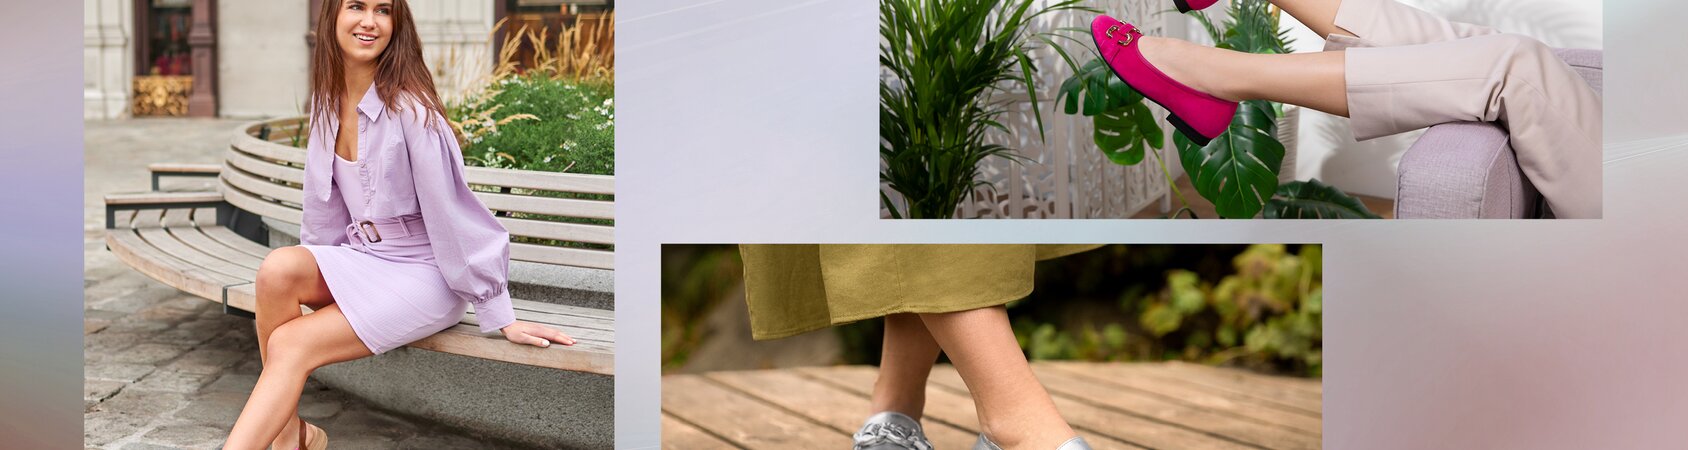 Gabor Magazin | Trends & Styling | Schuhfarben und Pantone-Farben richtig kombinieren | © Gabor Shoes AG, Rosenheim